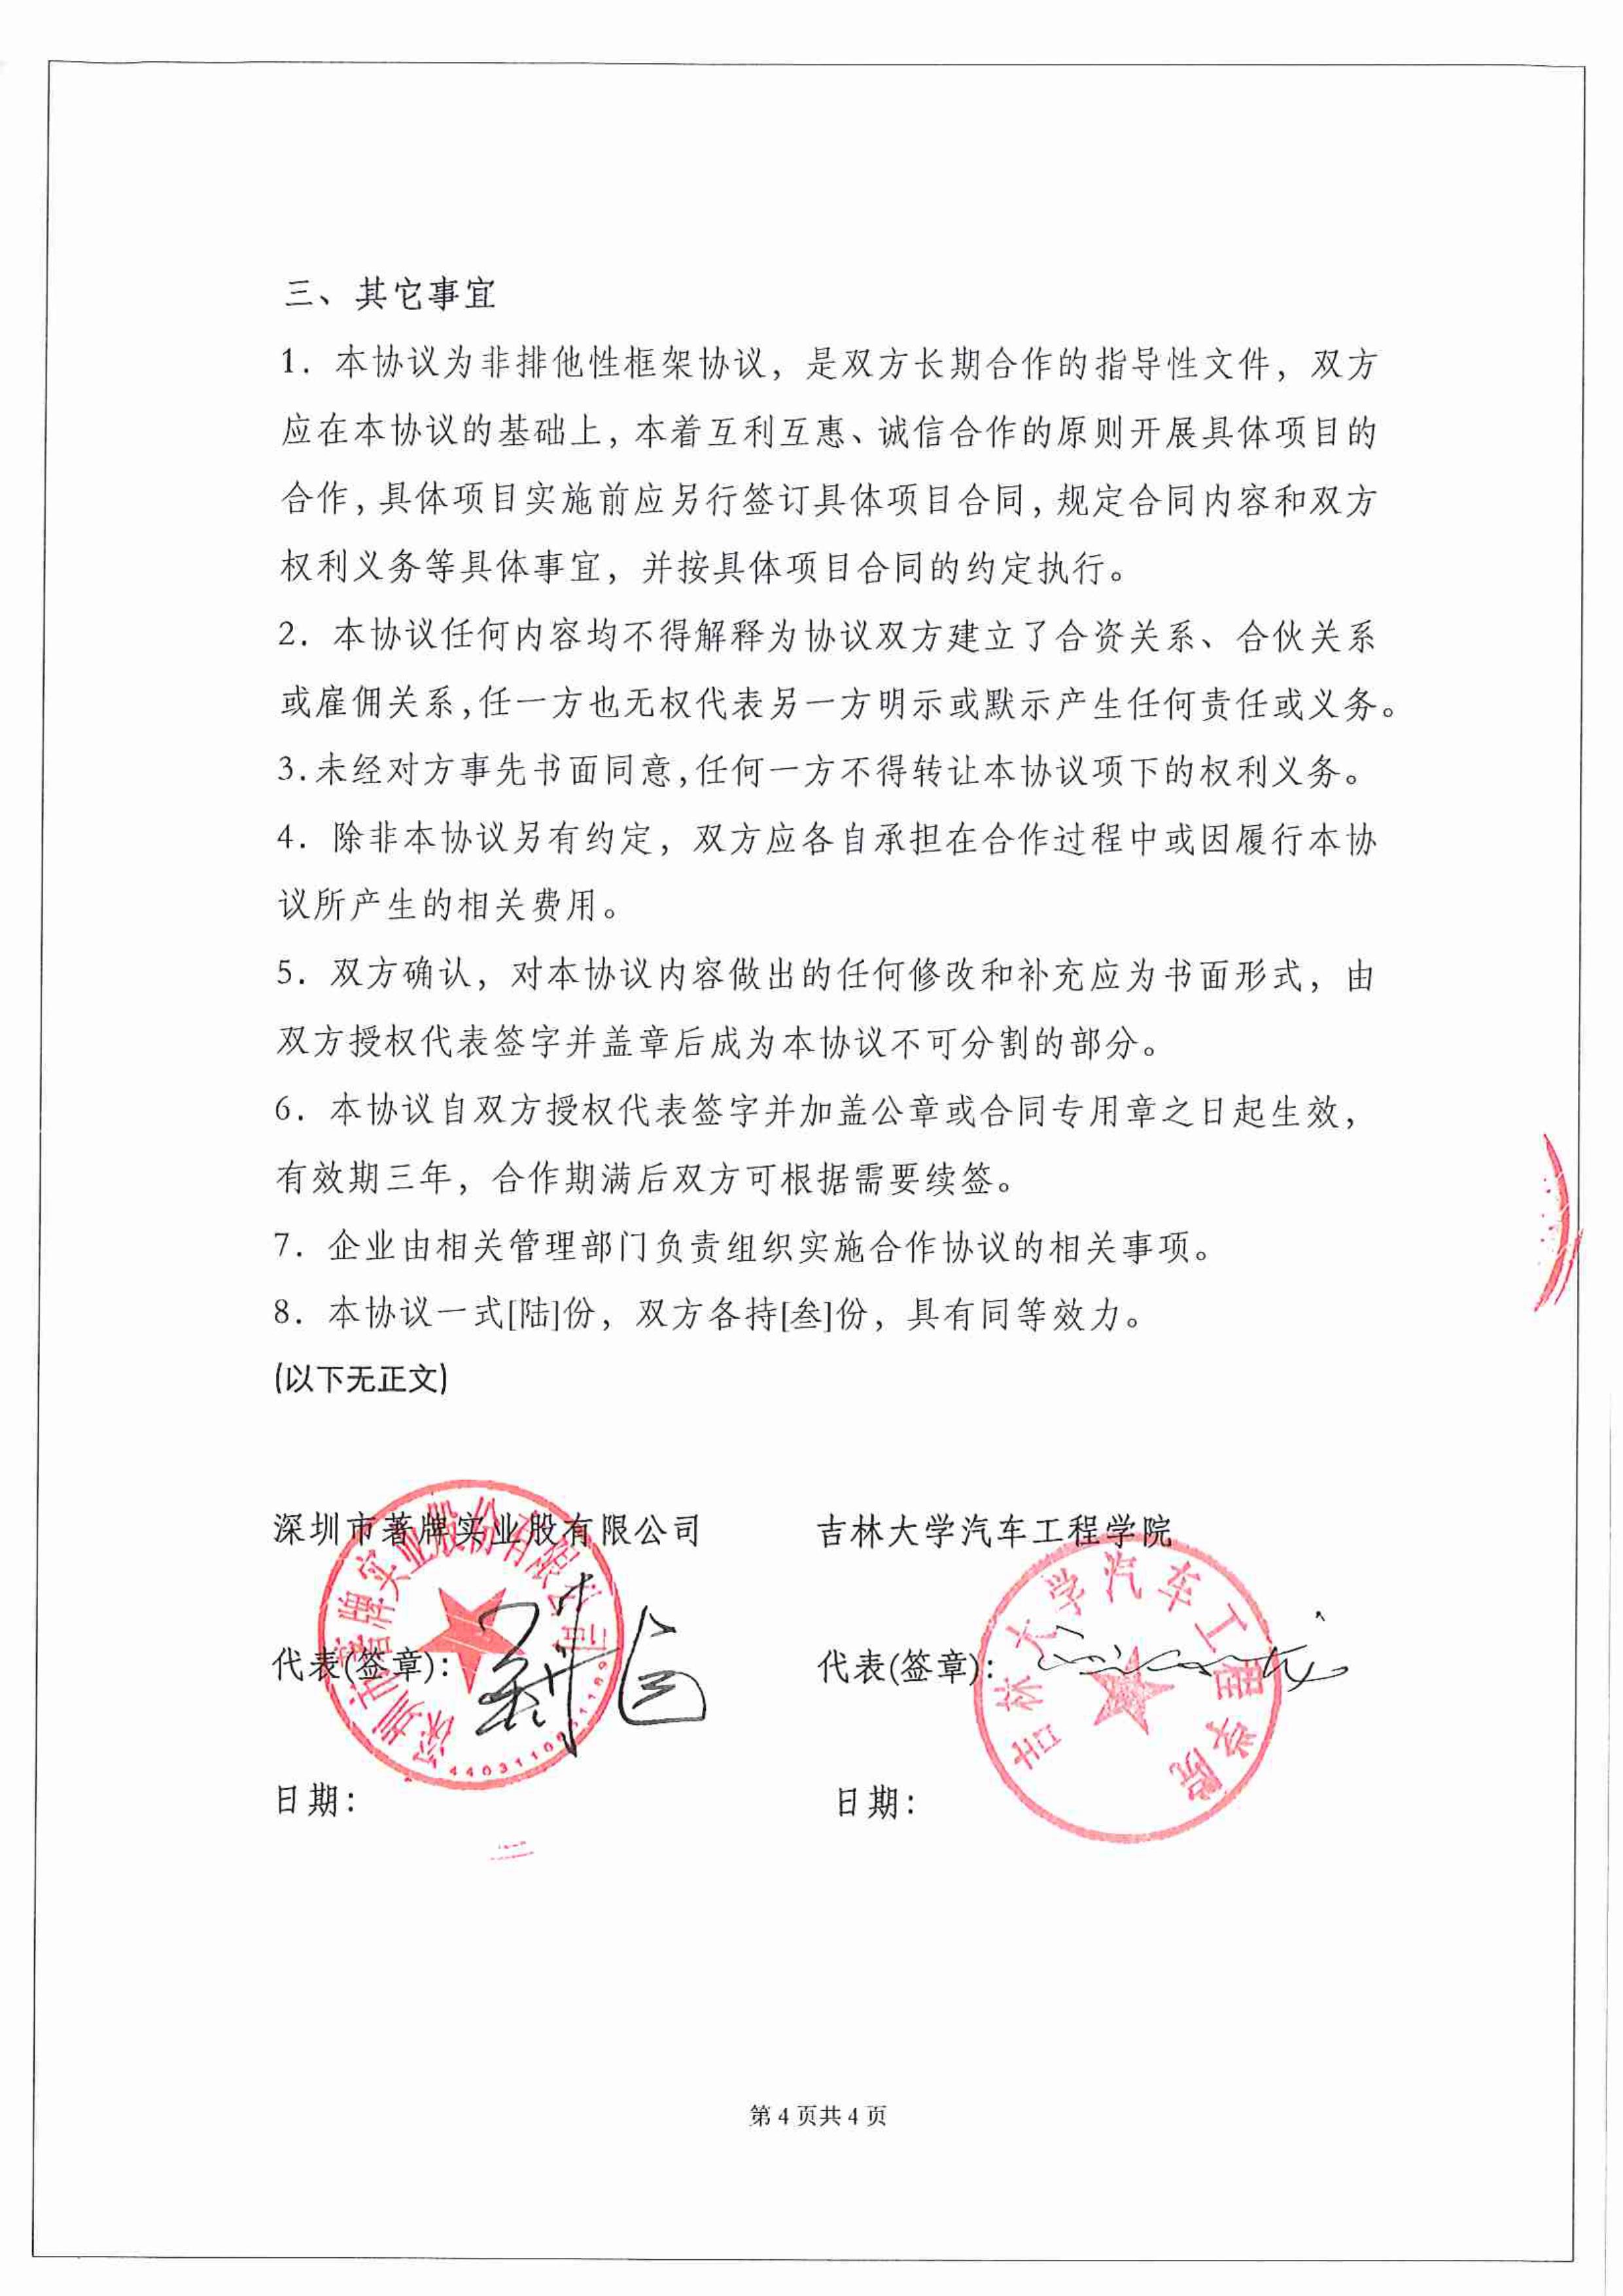 2019年12月15日，深圳市著牌实业股份有限公司与吉林大学工程学院签订战略合作协议。